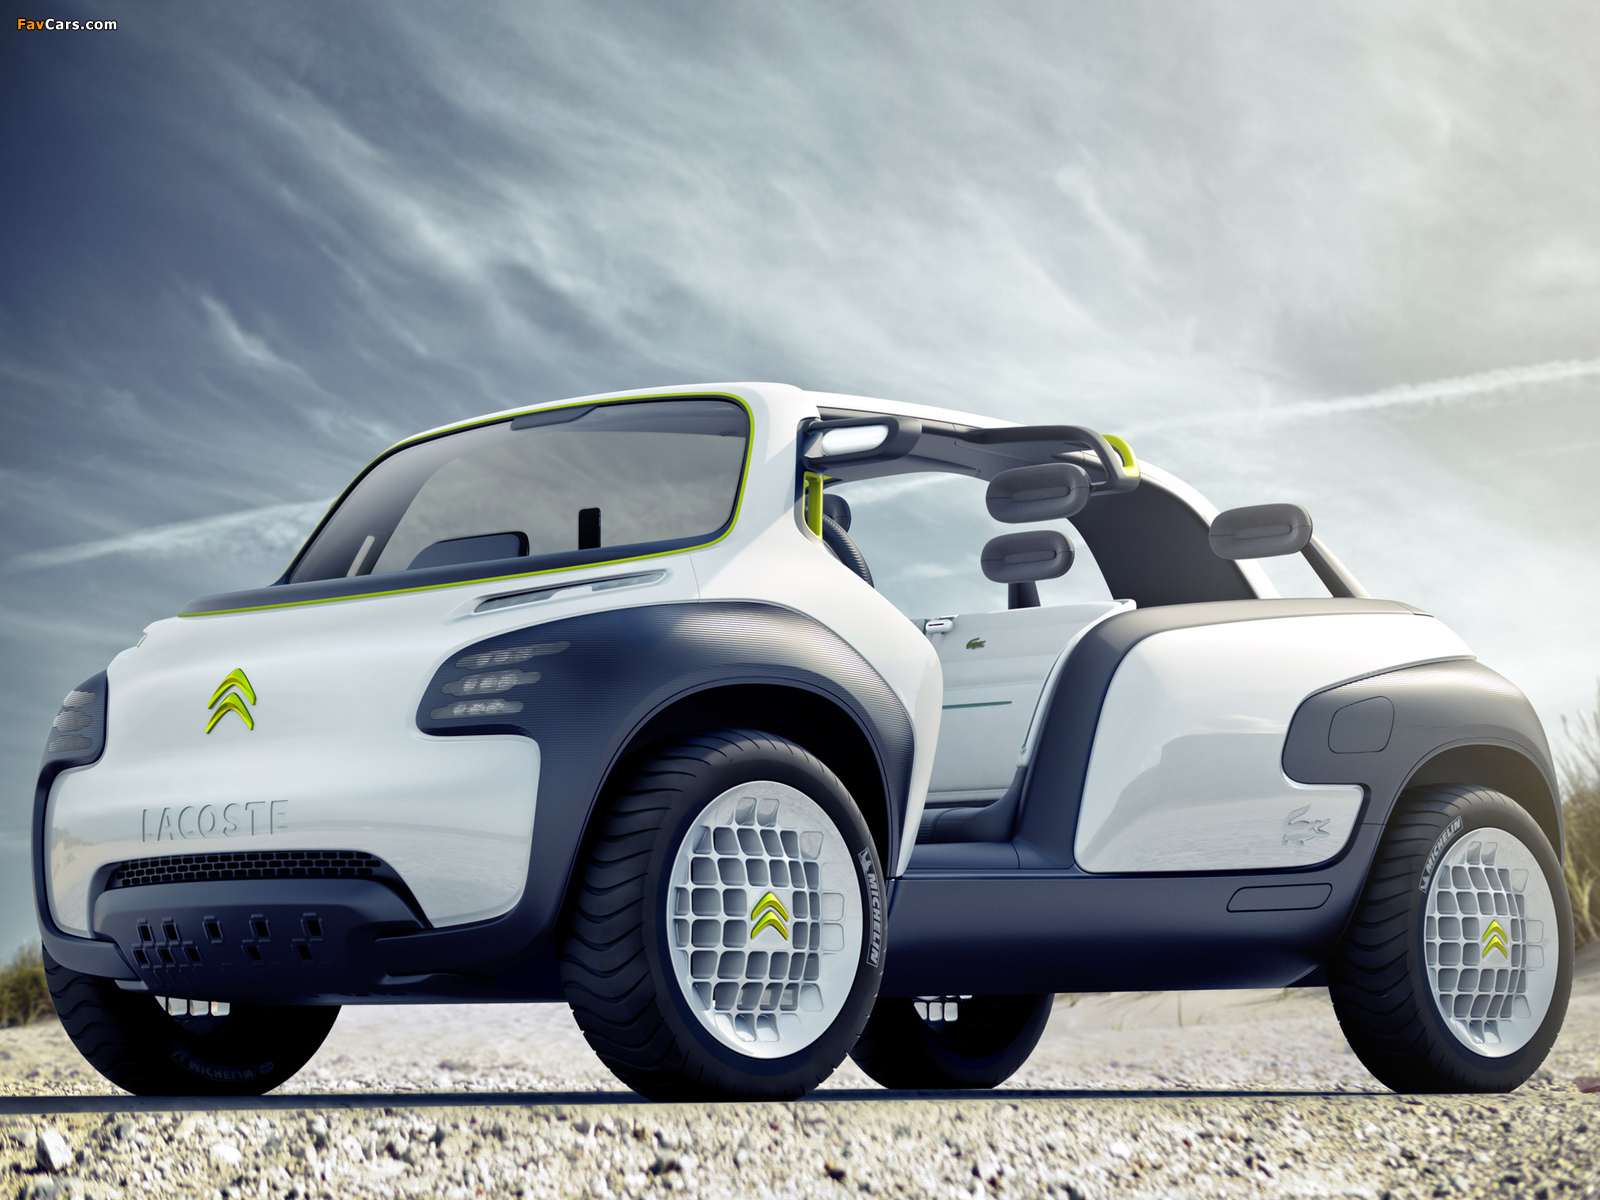 Citroën Lacoste Concept 2010 images (1600 x 1200)